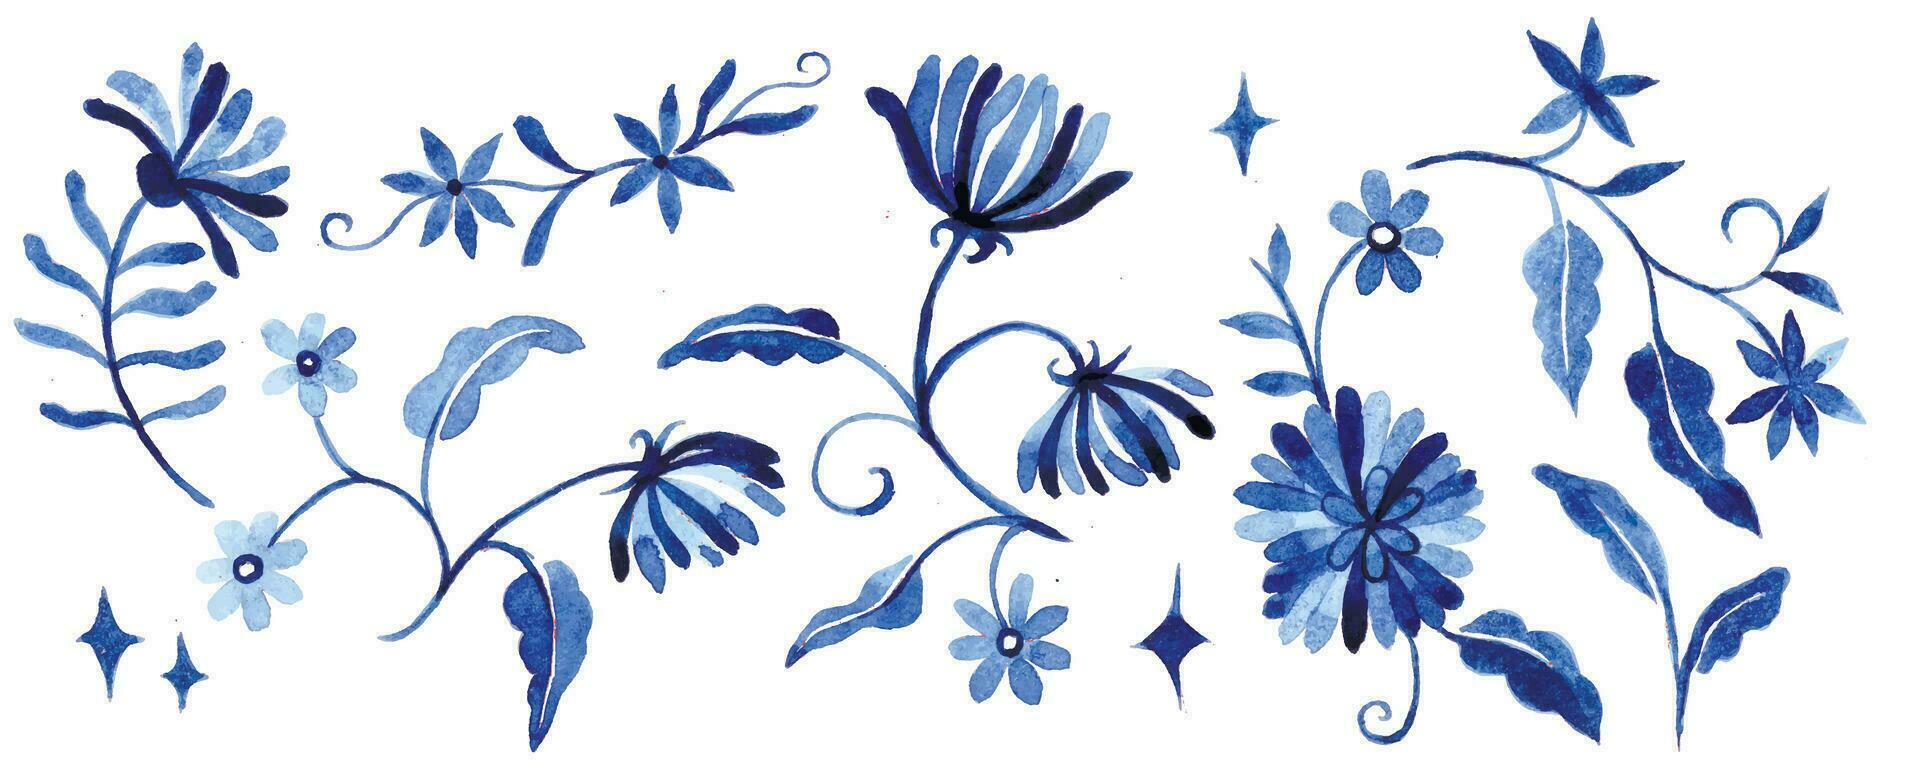 Aquarell Zeichnung, einstellen mit Fantastisch Blau Blumen auf ein Weiß Hintergrund, Ornament vektor